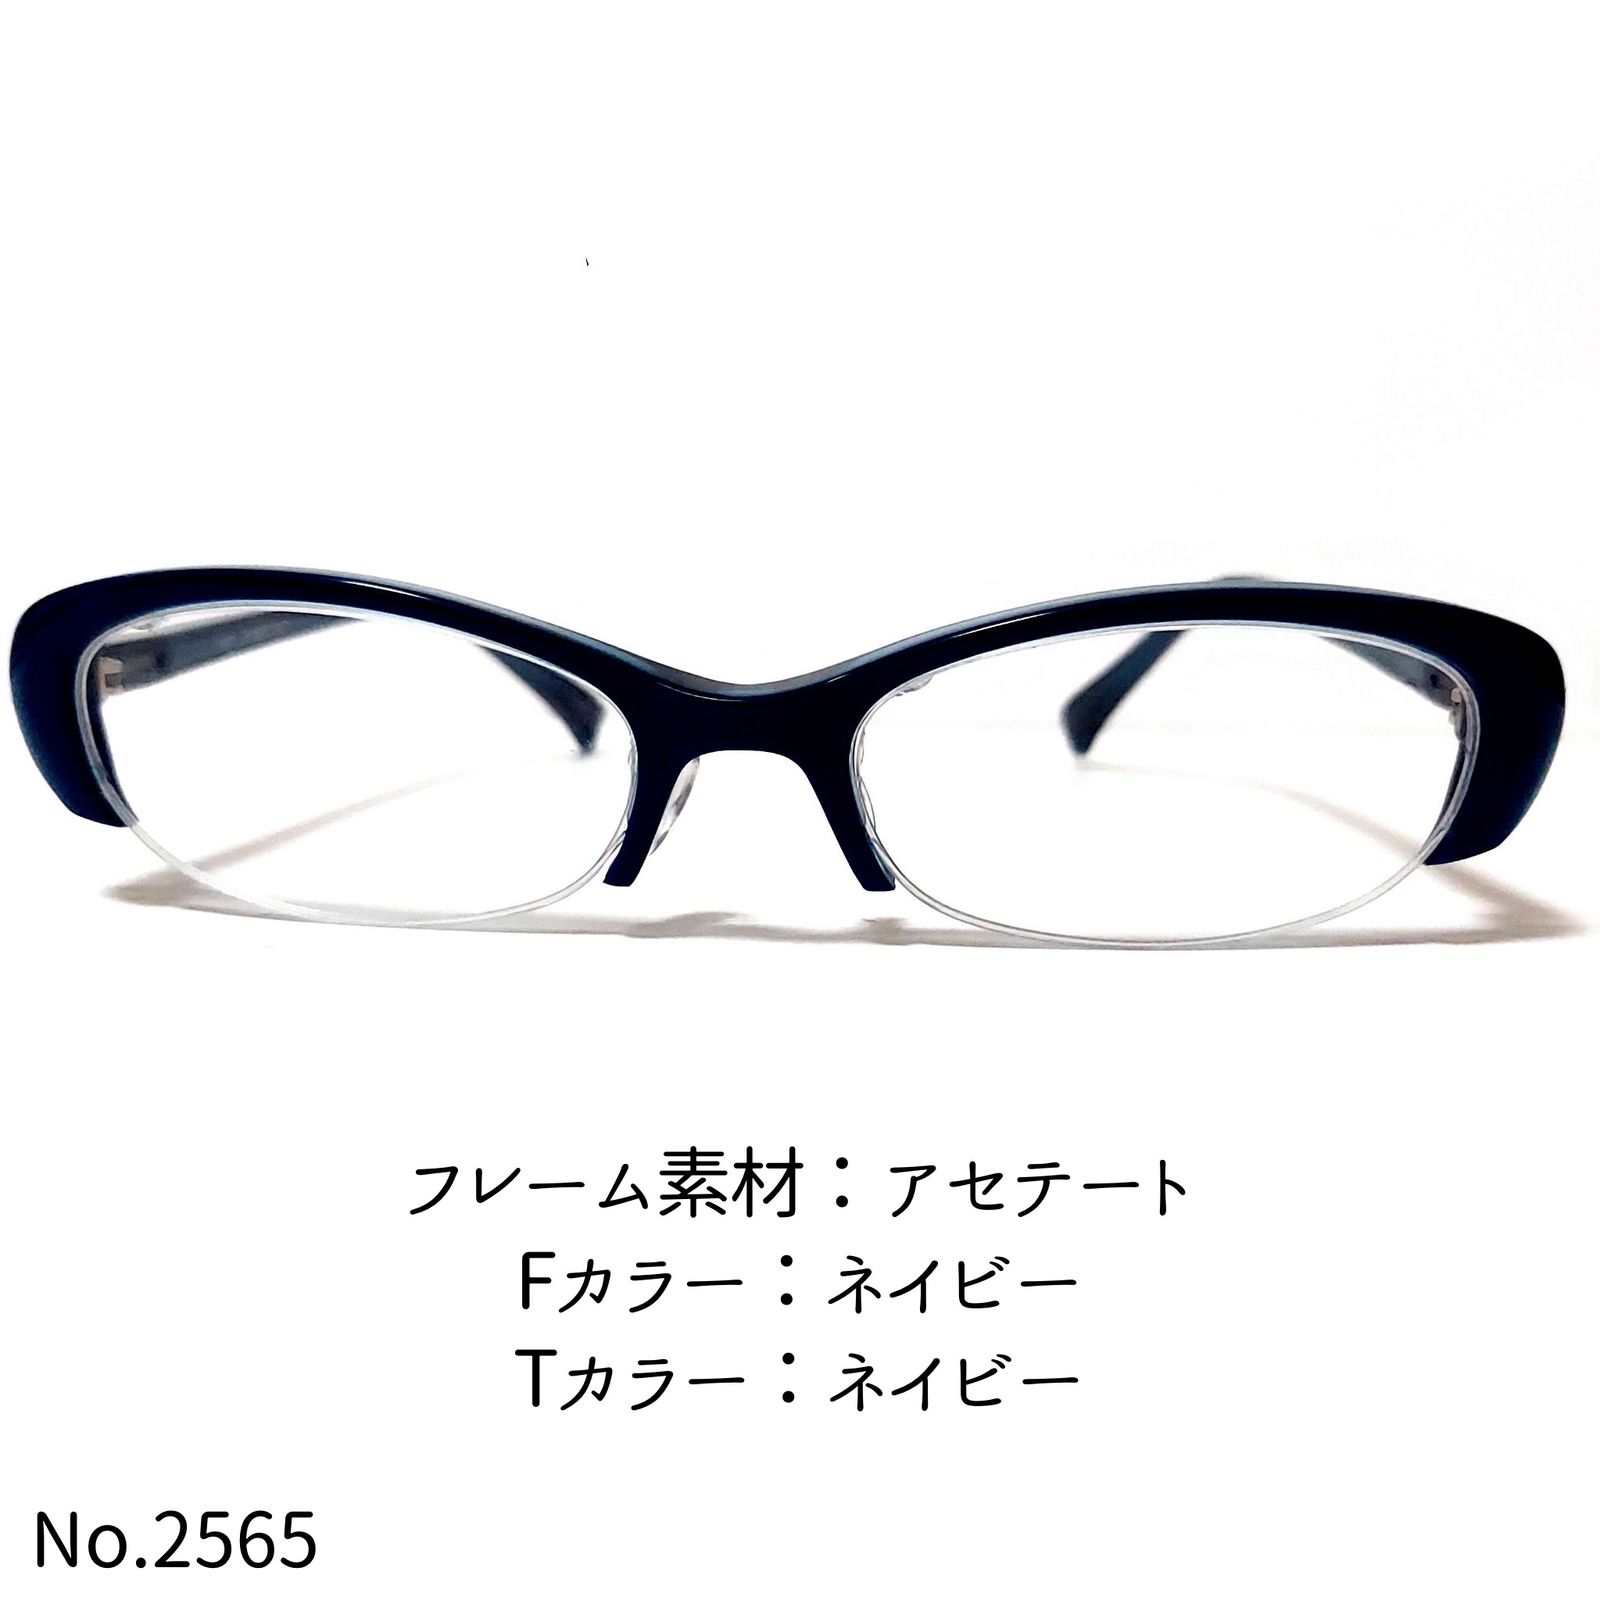 ダテメガネNo.2565メガネ 1012T セル・ナイロール【度数入り込み価格